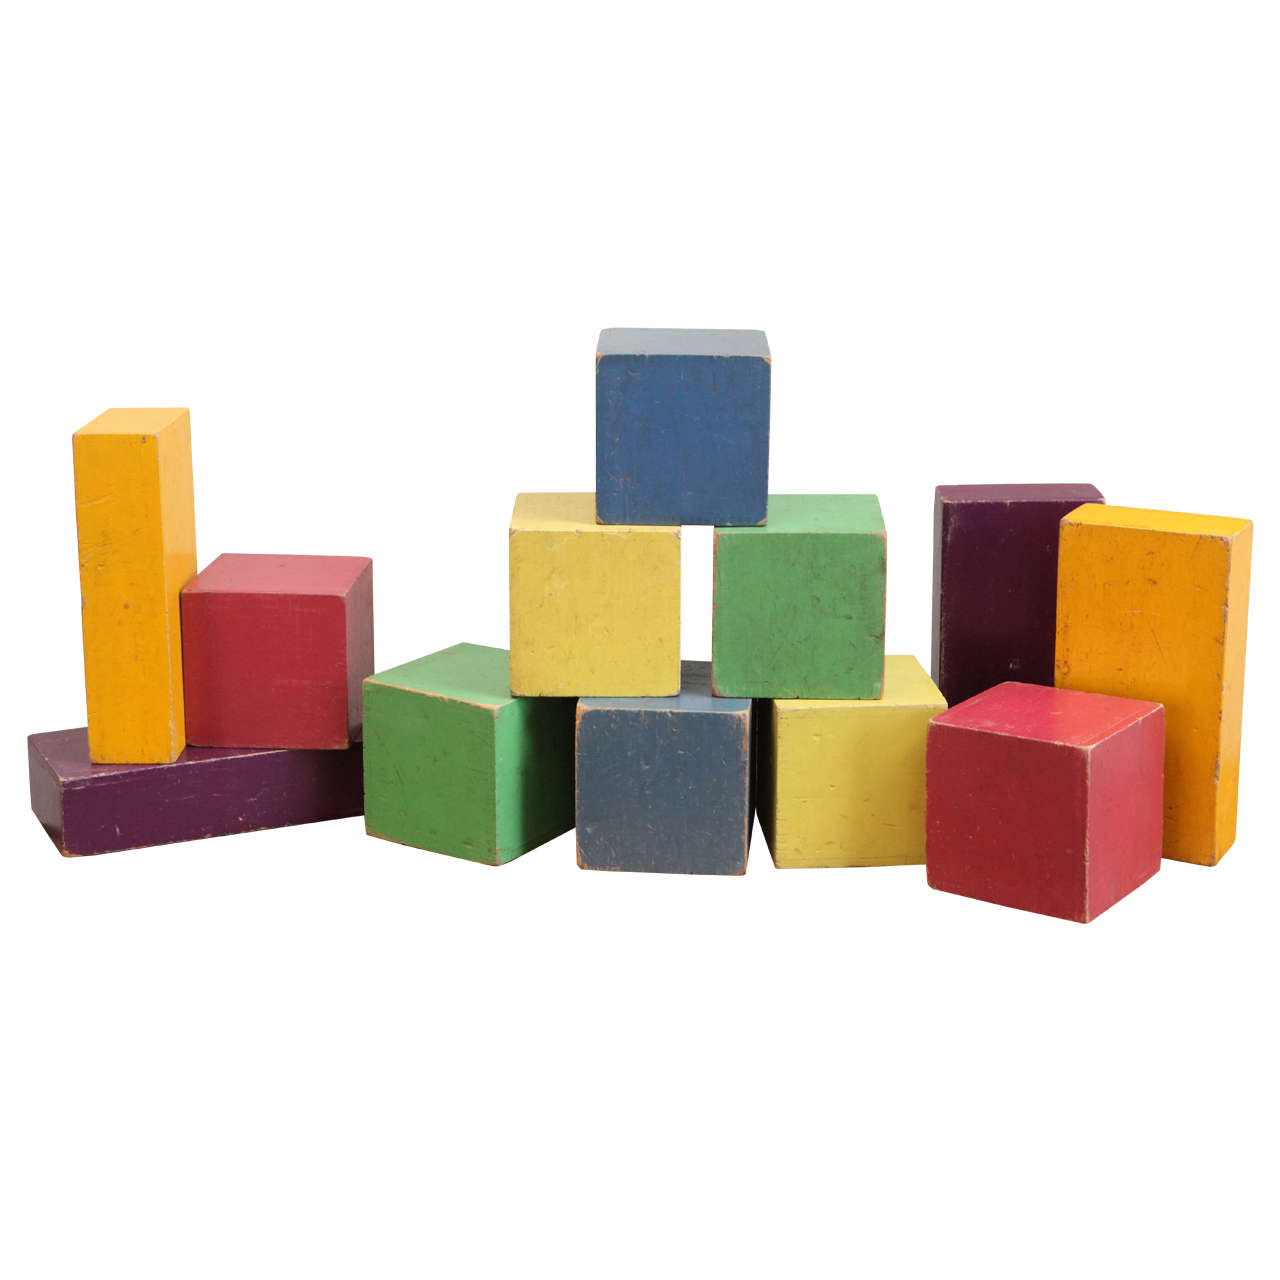 Set of Oversized Children's Blocks For Sale